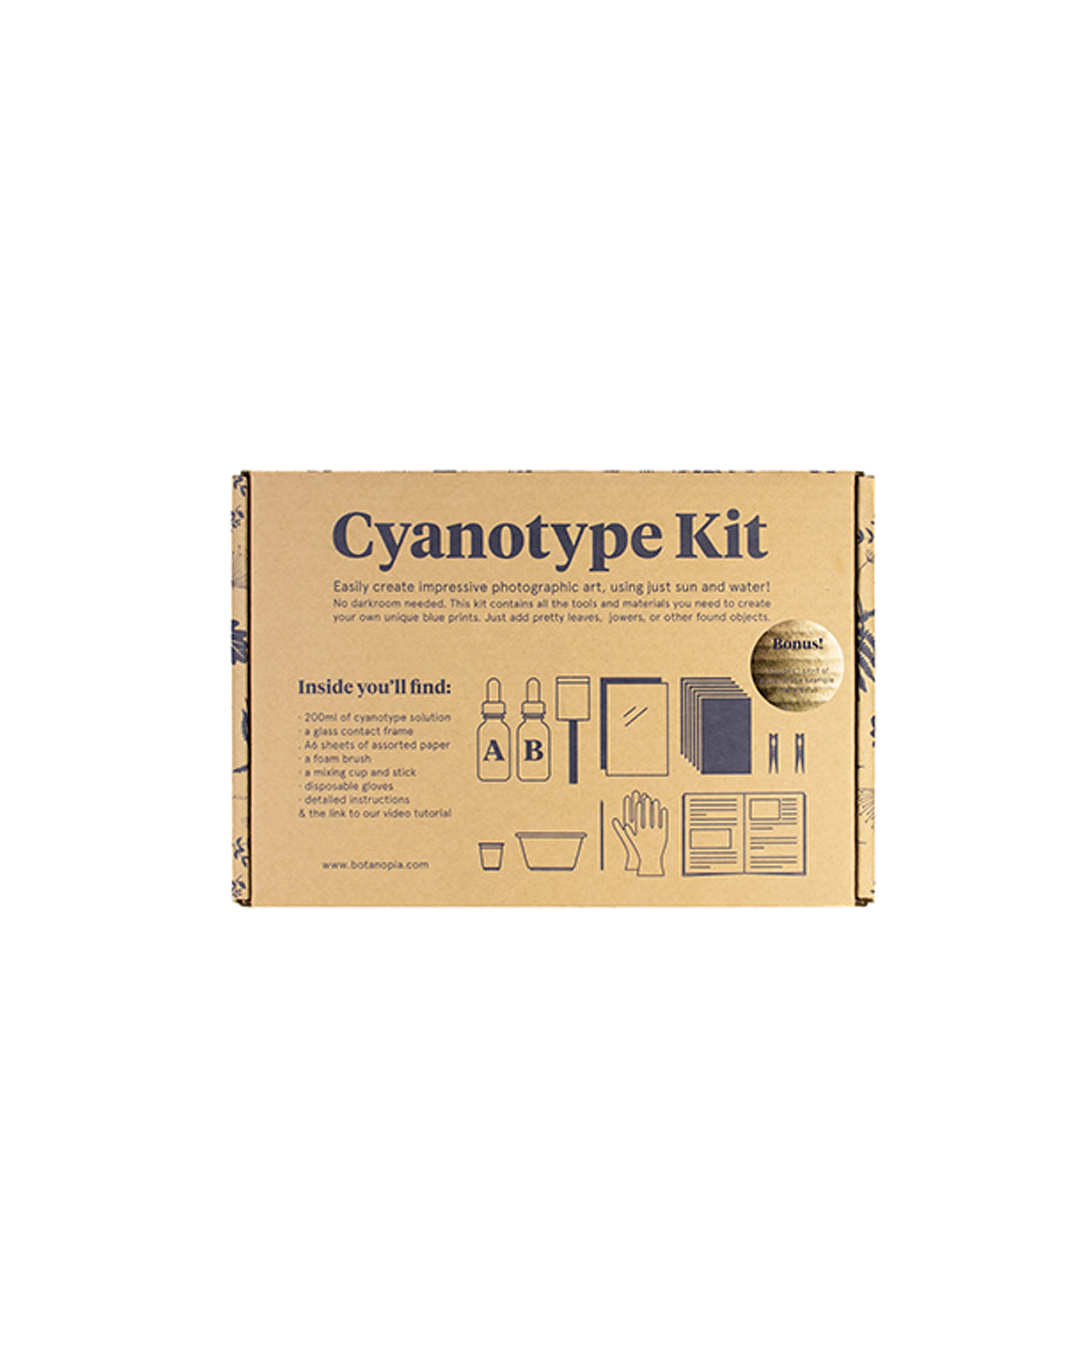 Le coffret Cyanotype